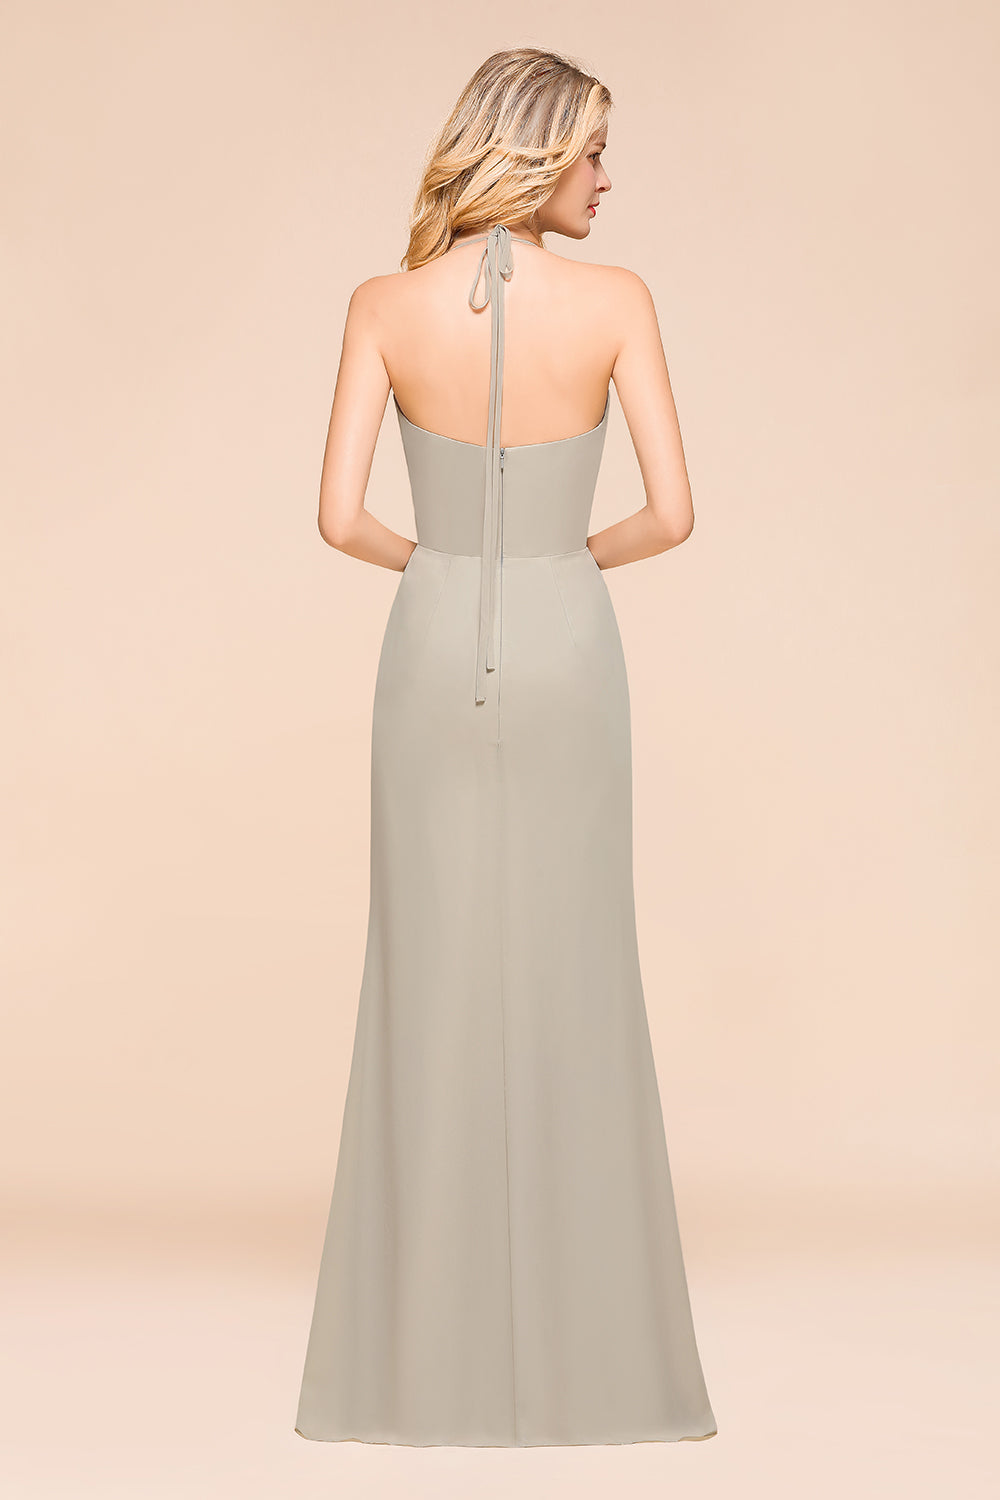 Finden Sie Elegante Brautjungfernkleider Lang Günstig online bei babyonlinedress.de. Schlichtes Hochzeitspartykleid für Sie zur Hochzeit gehen.